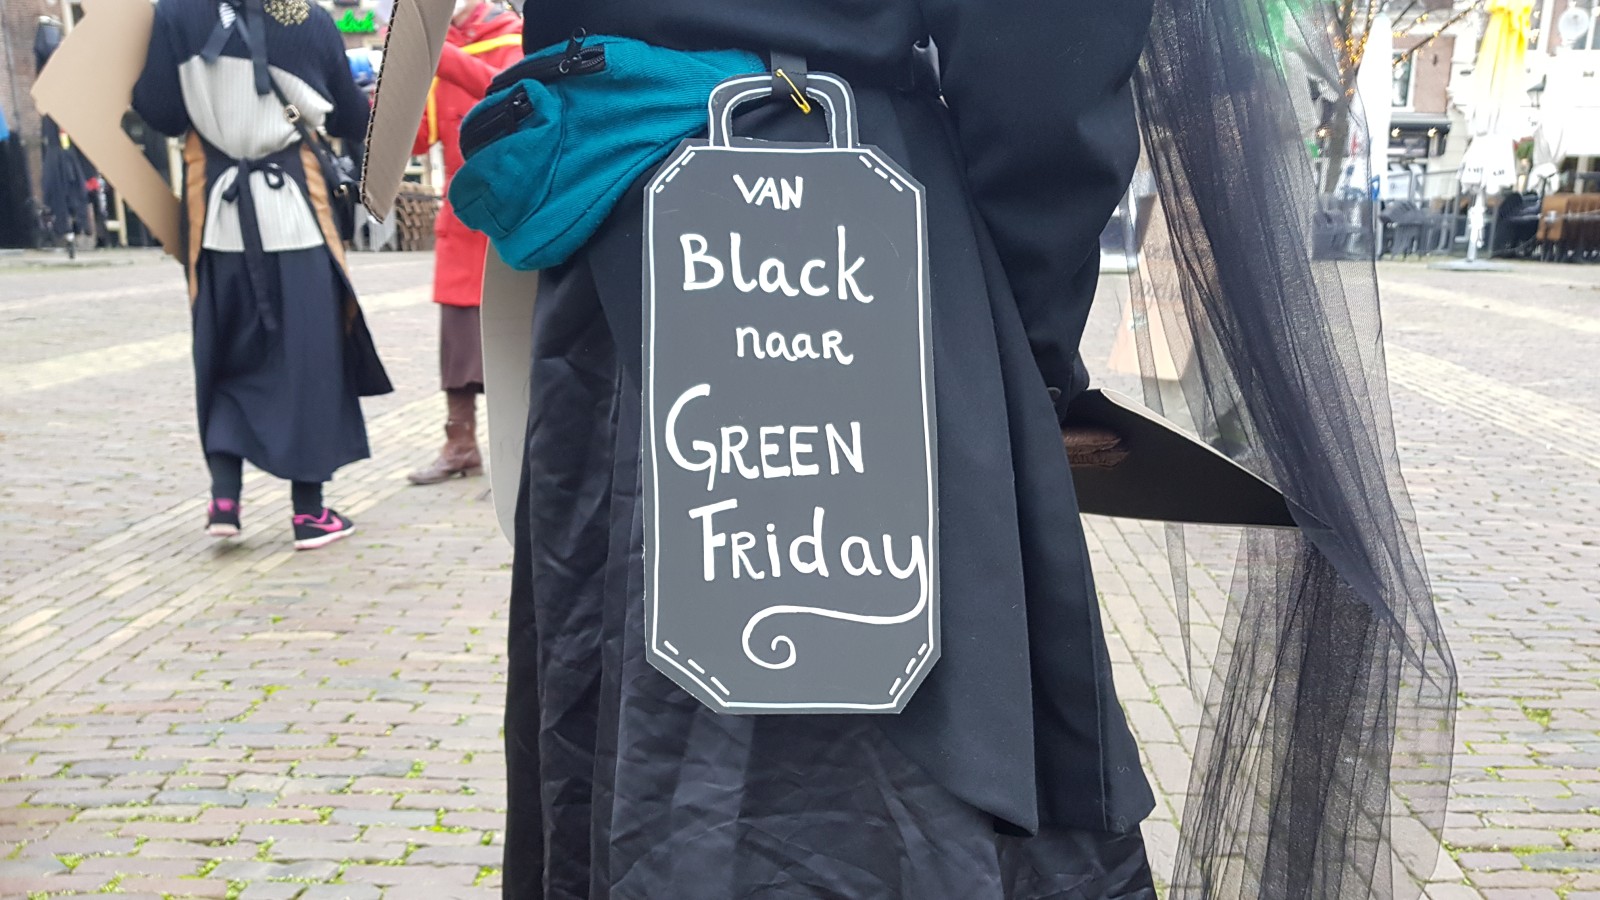 'Van Black naar Green Friday'